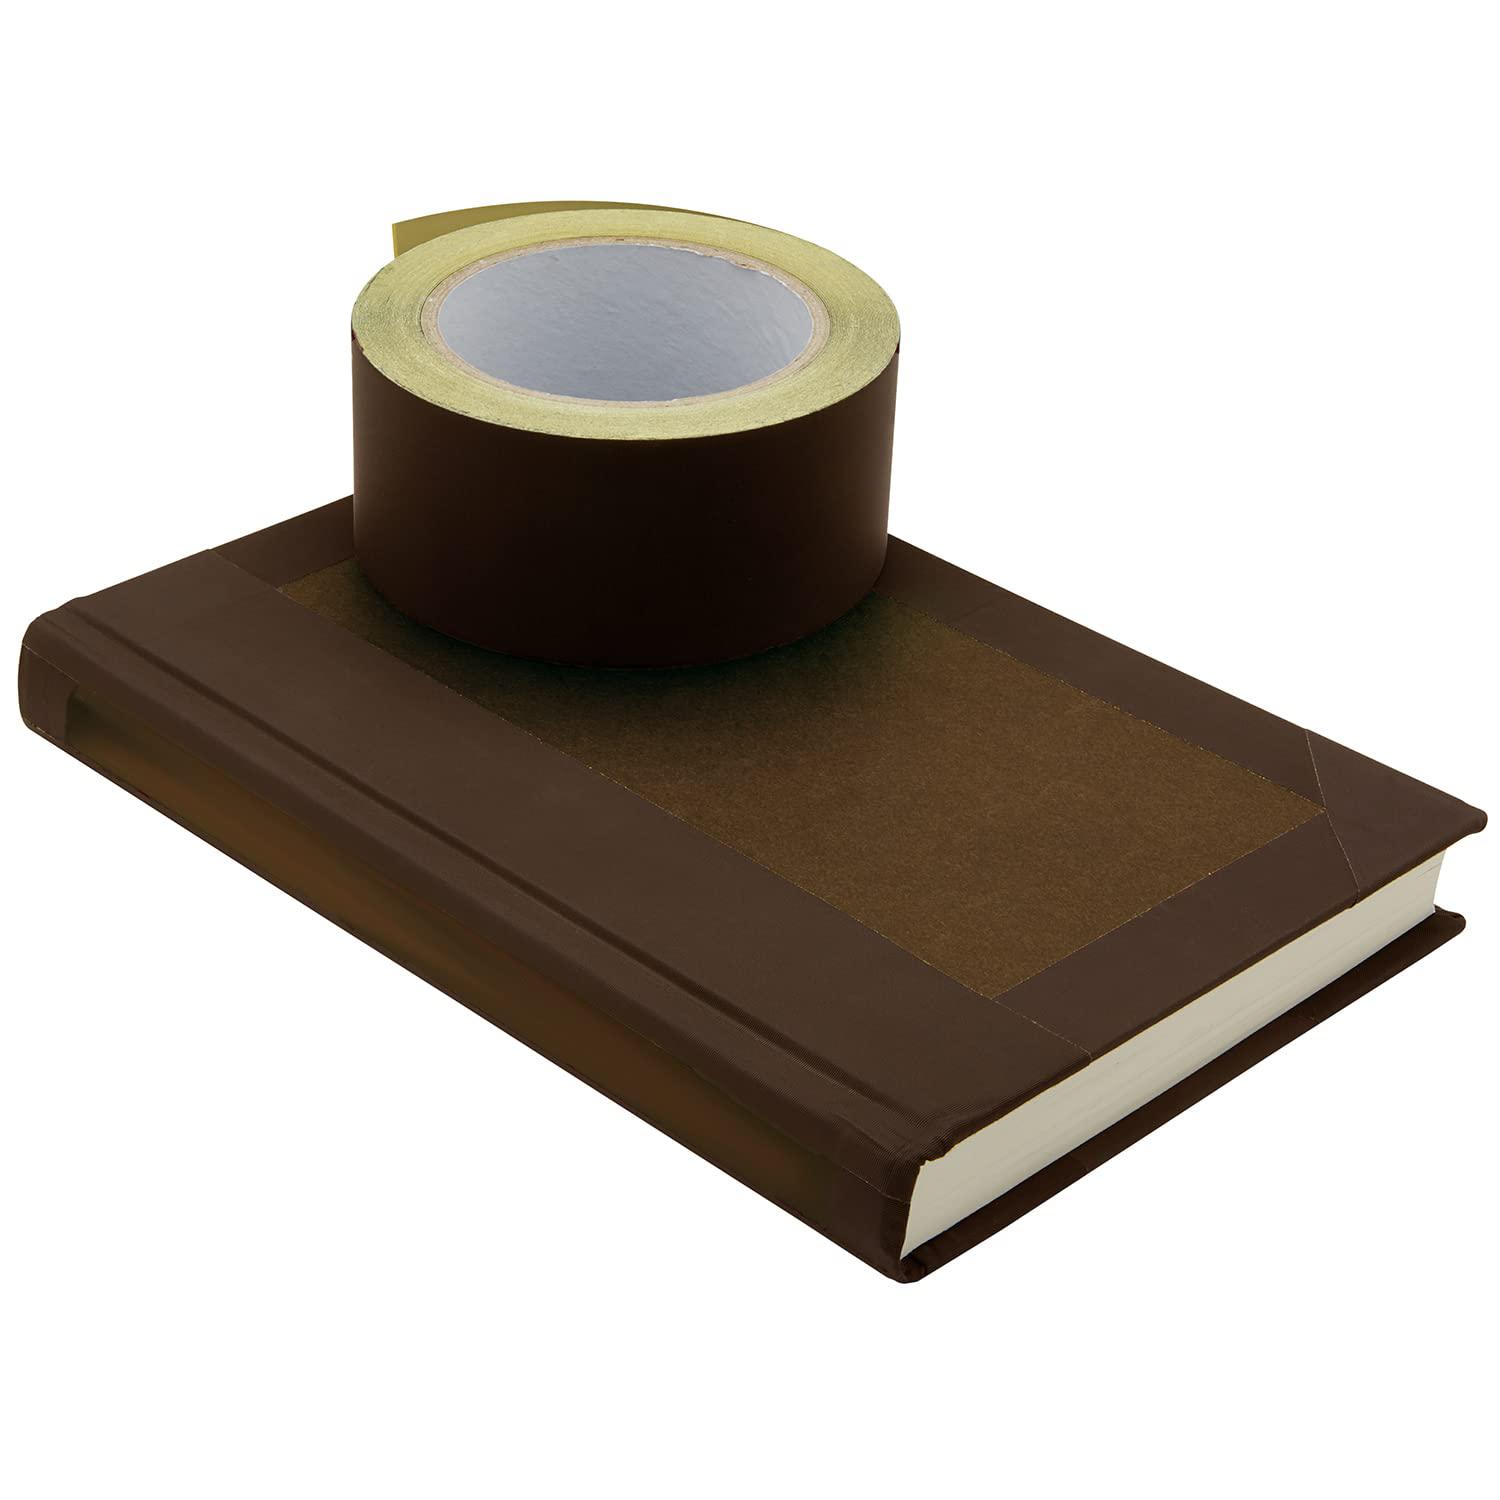 Koltose by Mash brown bookbinding tape, brown cloth book repair